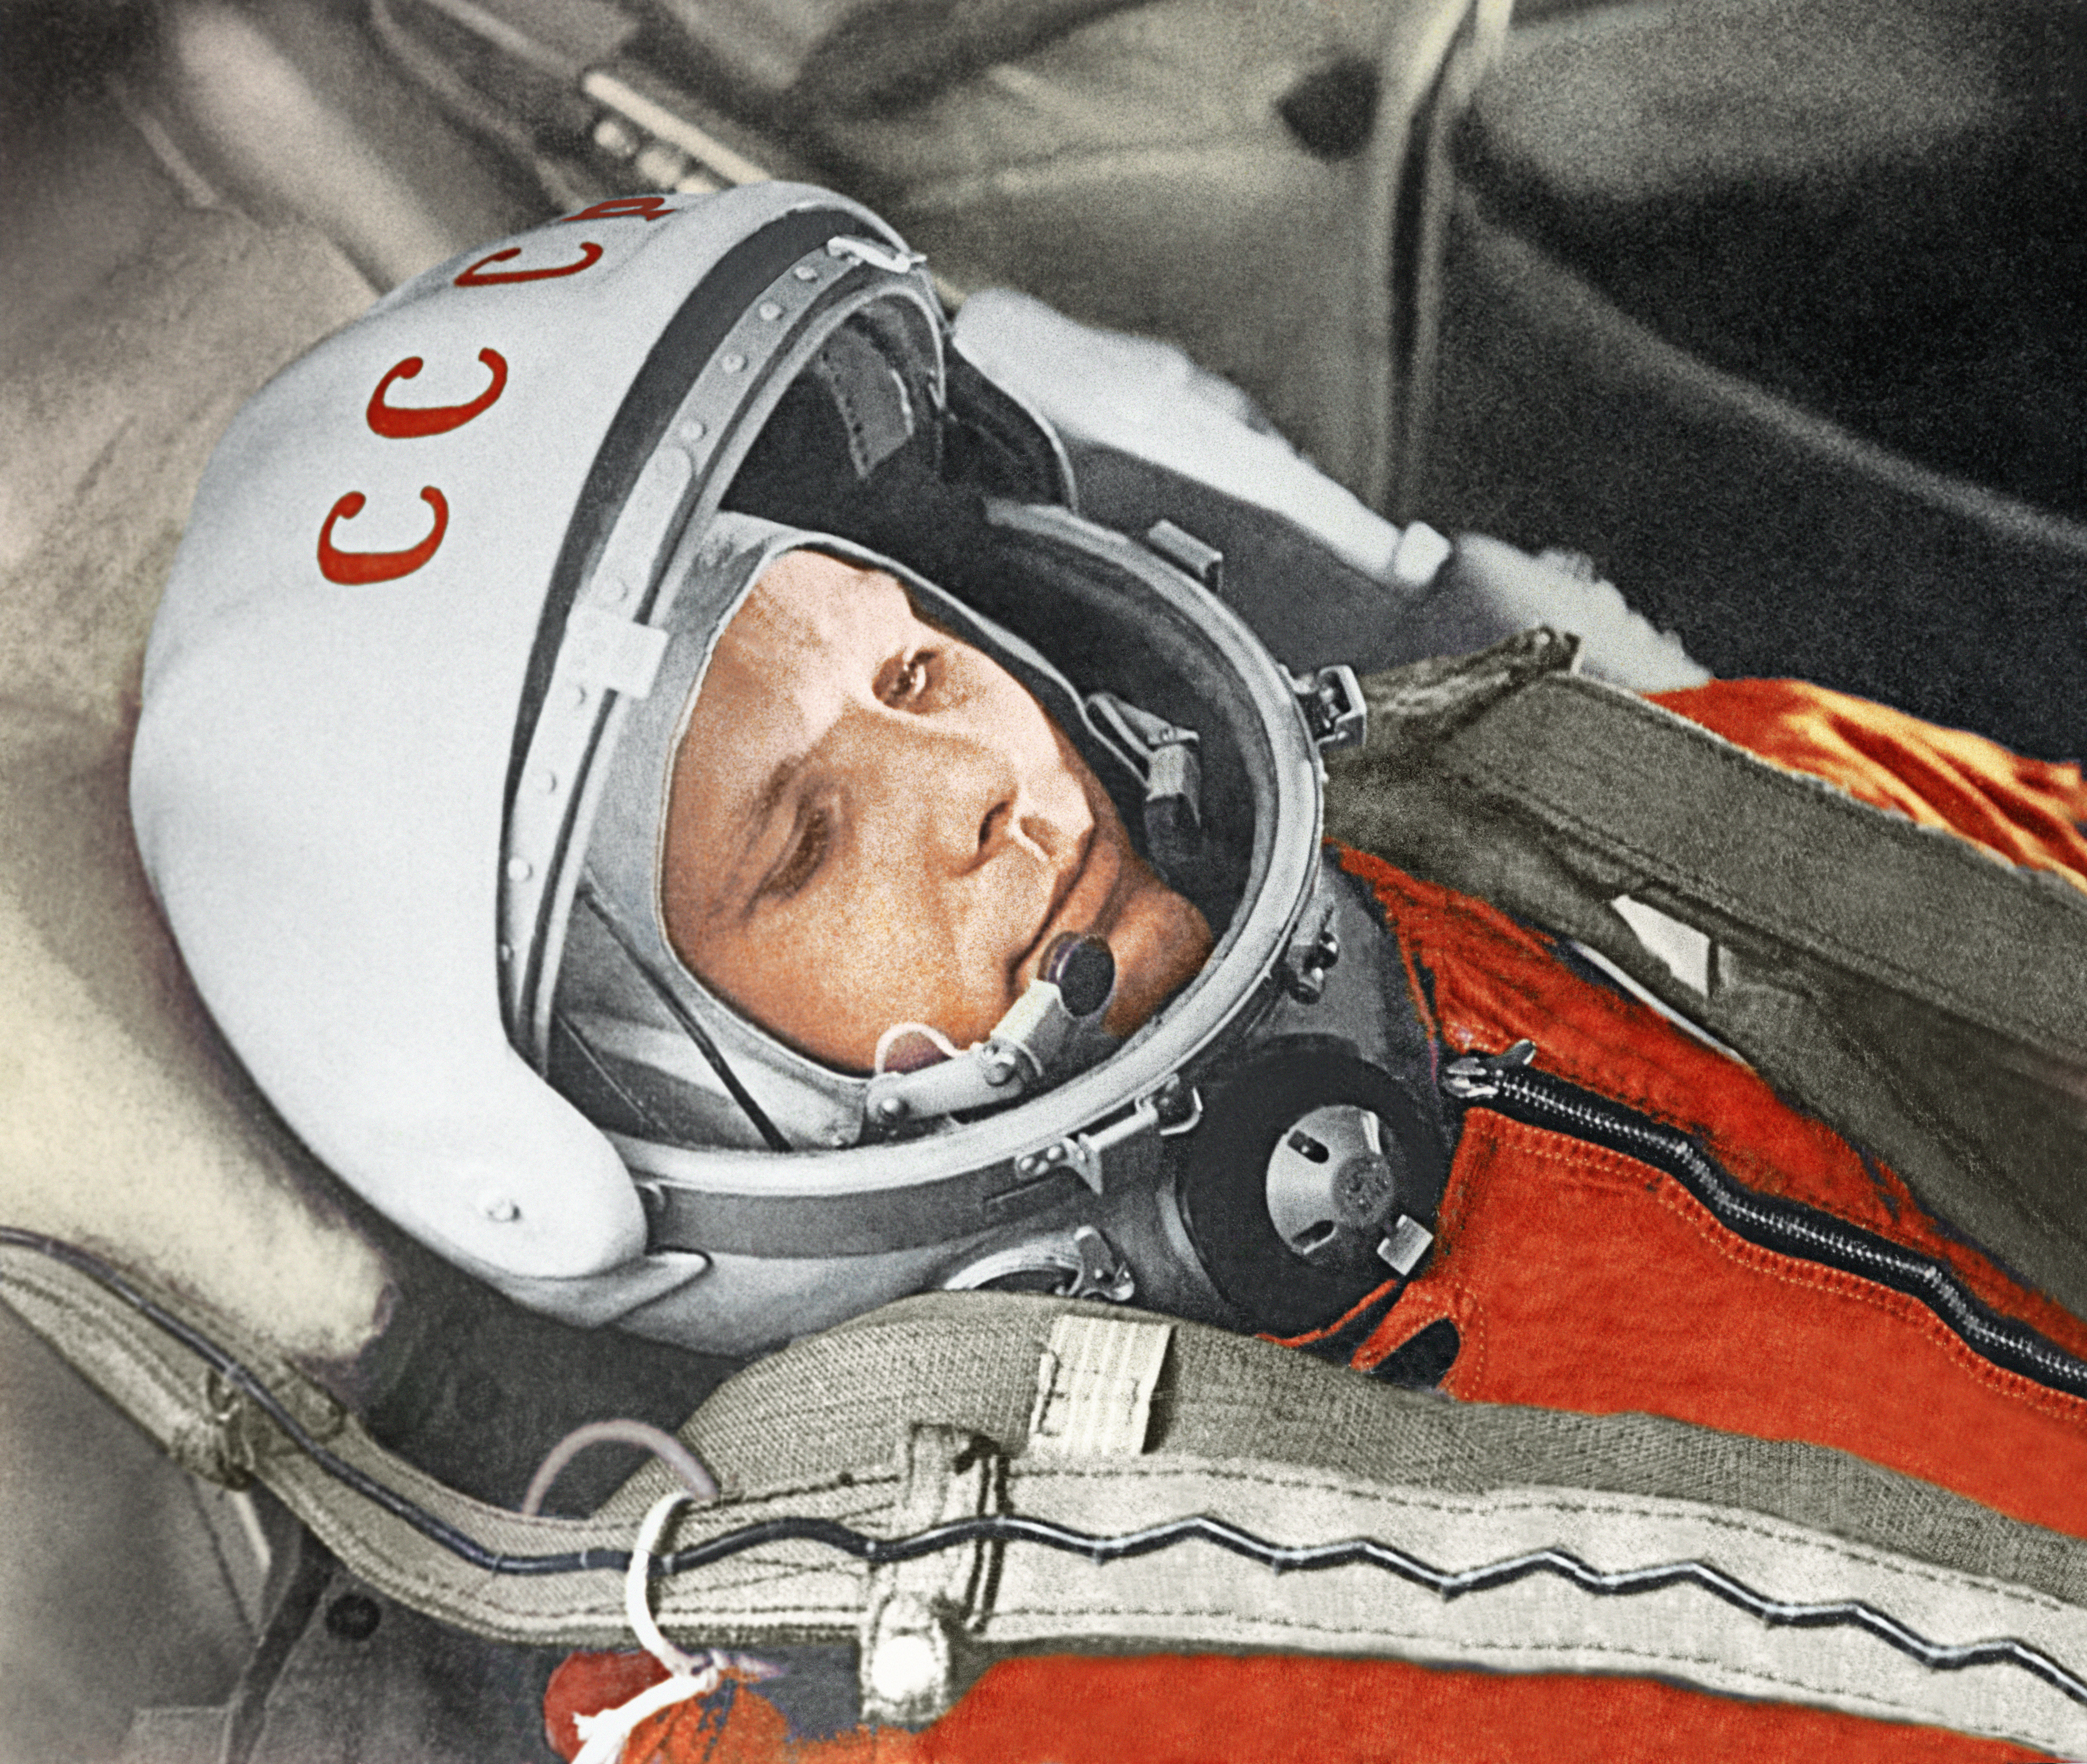 Первый корабль полетевший в космос. 12 Апреля 1961 года полет Юрия Гагарина в космос.